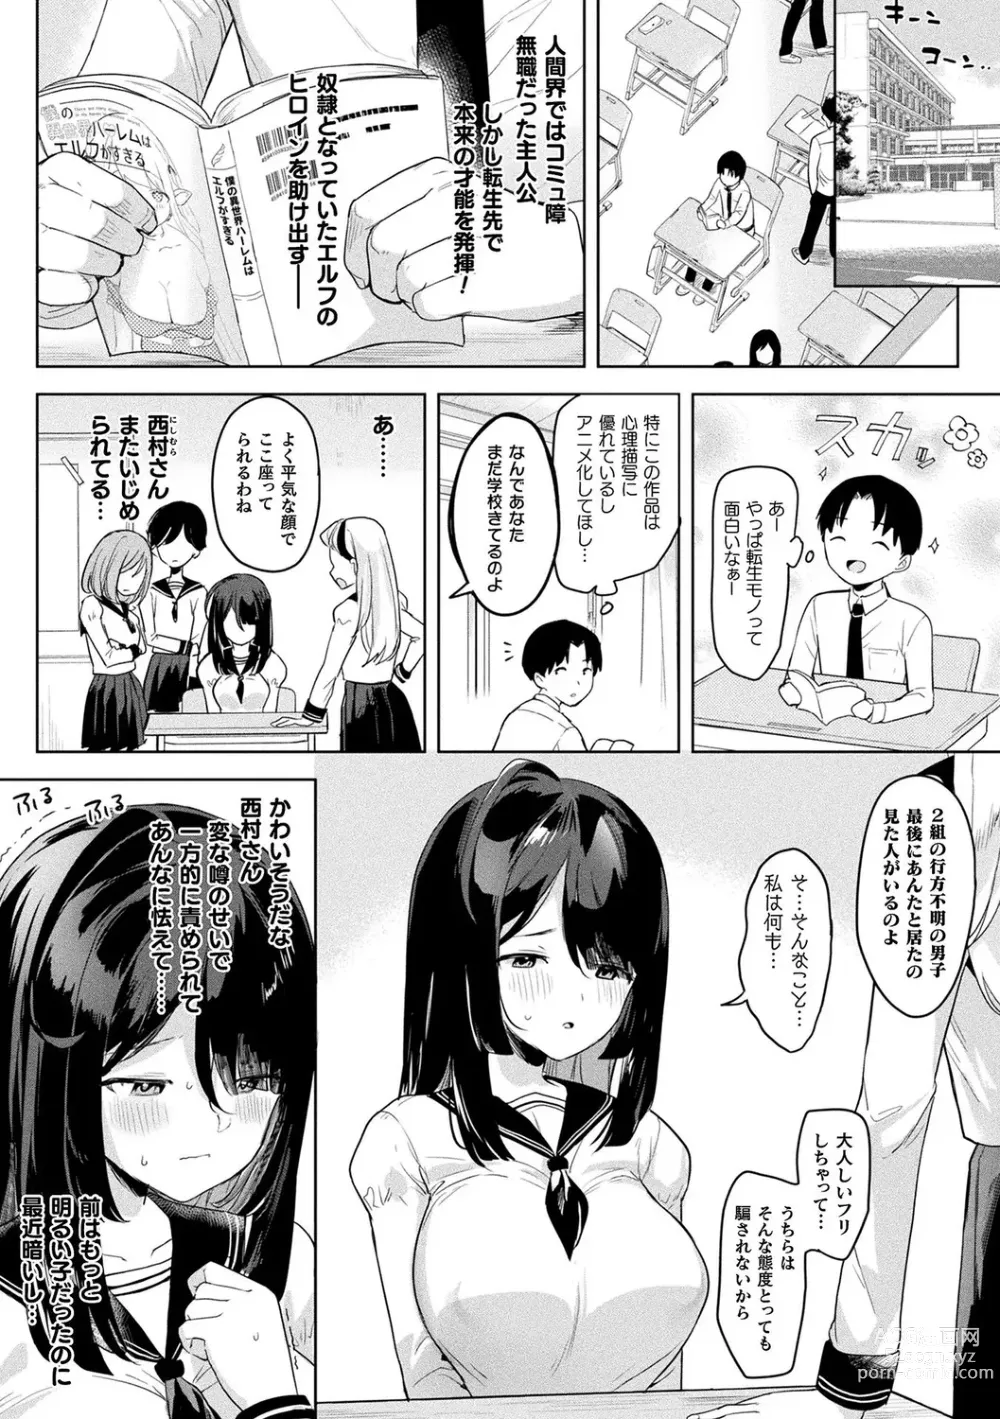 Page 6 of manga Neneki Shoujo -Anata o Tabetai-